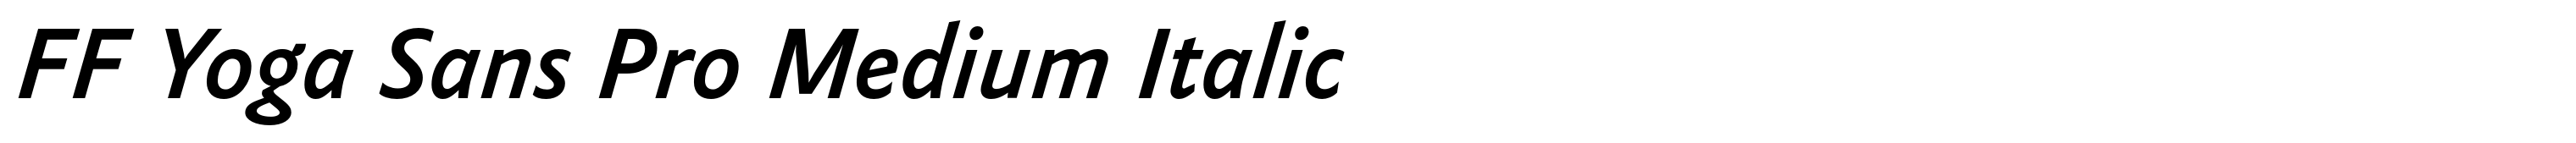 FF Yoga Sans Pro Medium Italic